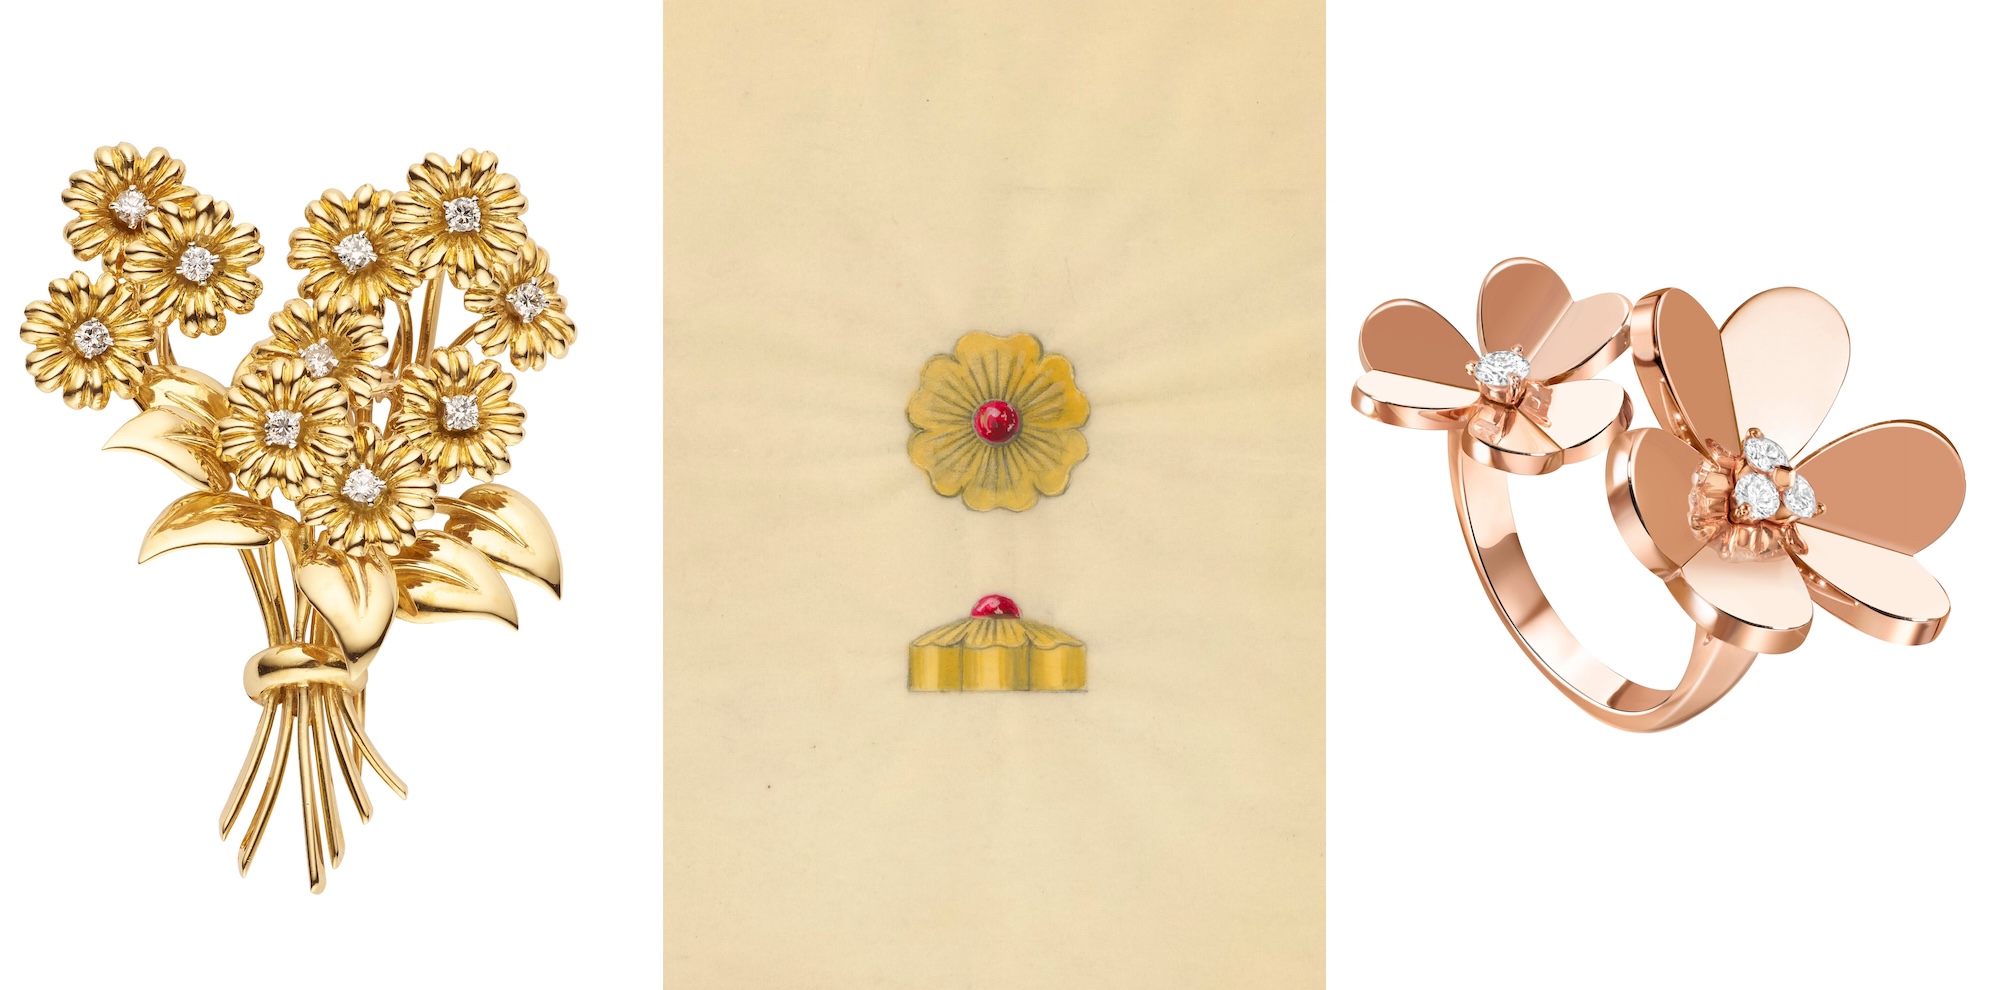 จากซ้ายไปขวาเข็มกลัดดอกเดซี่ตัวเรือนทองคำสีเหลืองประดับเพชรปี ค.ศ. 1953, ภาพวาดตลับทรงดอกไม้สร้างสรรค์ในปีค.ศ. 1960 และแหวนระหว่างนิ้วตัวเรือนทองคำสีกุหลาบประดับเพชร จาก Van Cleef & Arpels